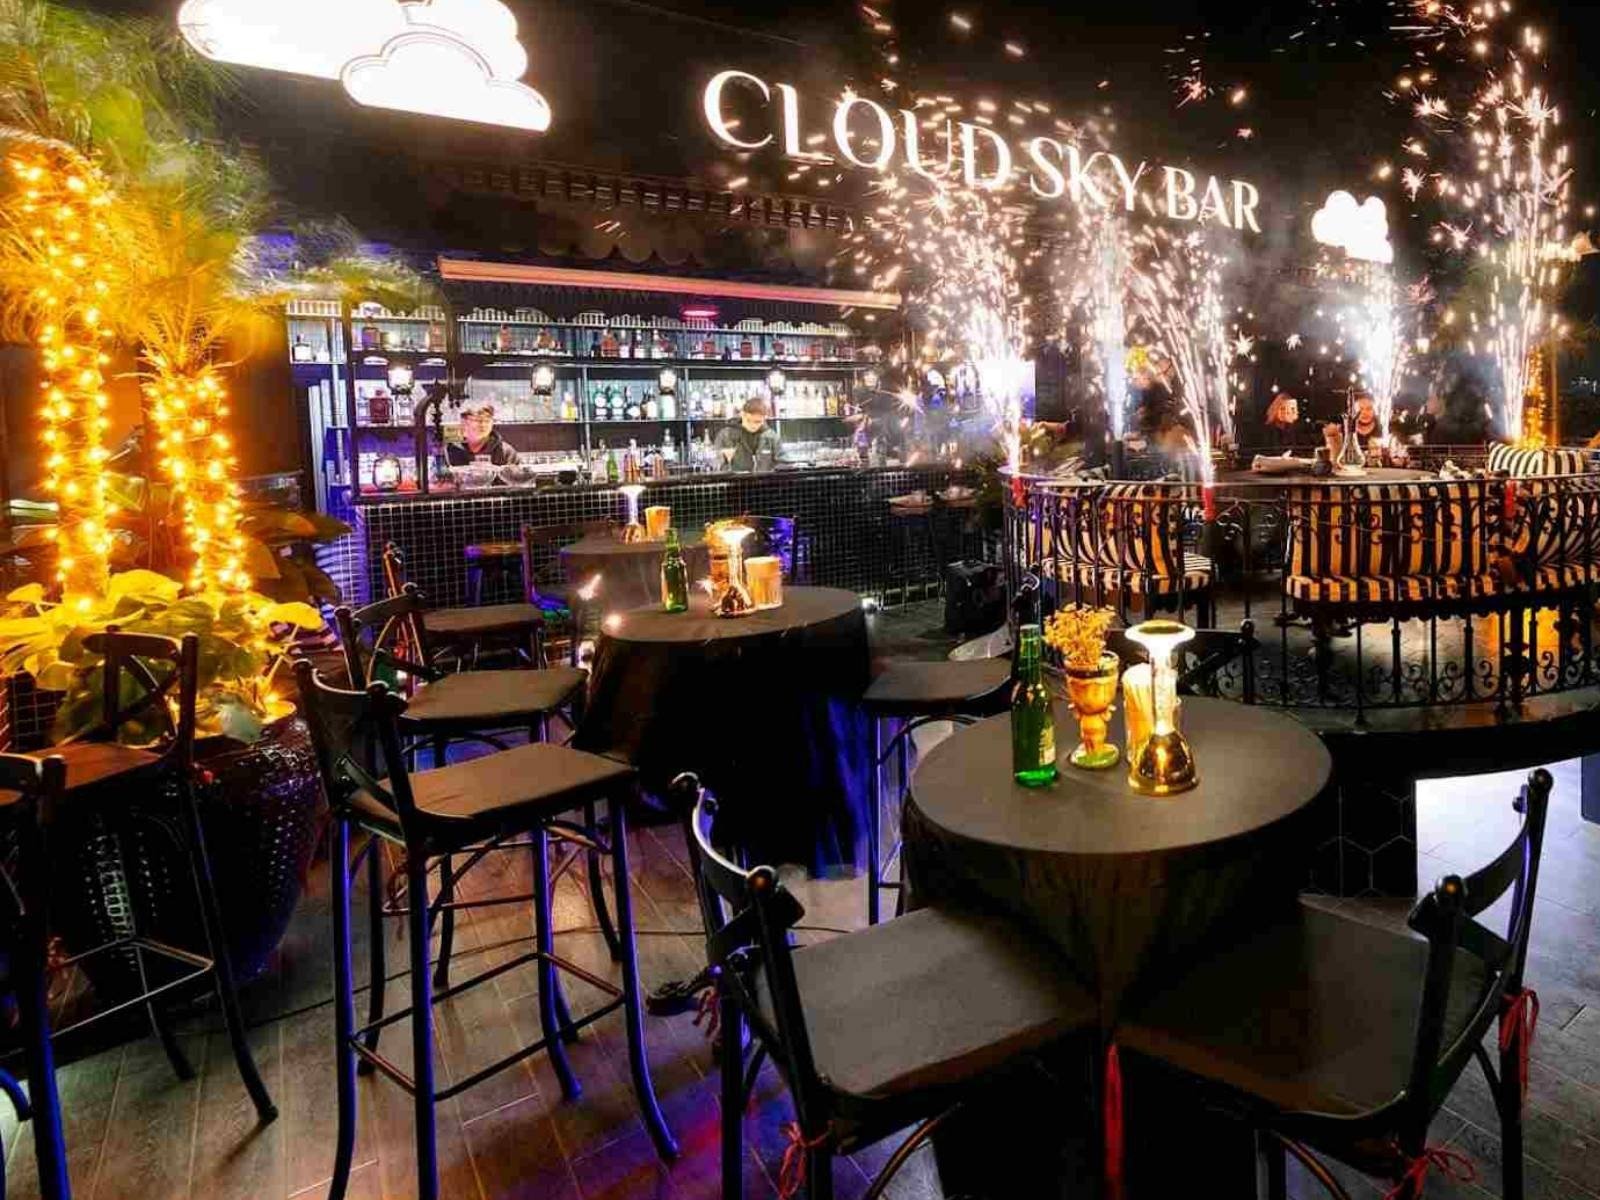 Cloud Sky Bar Hanoi